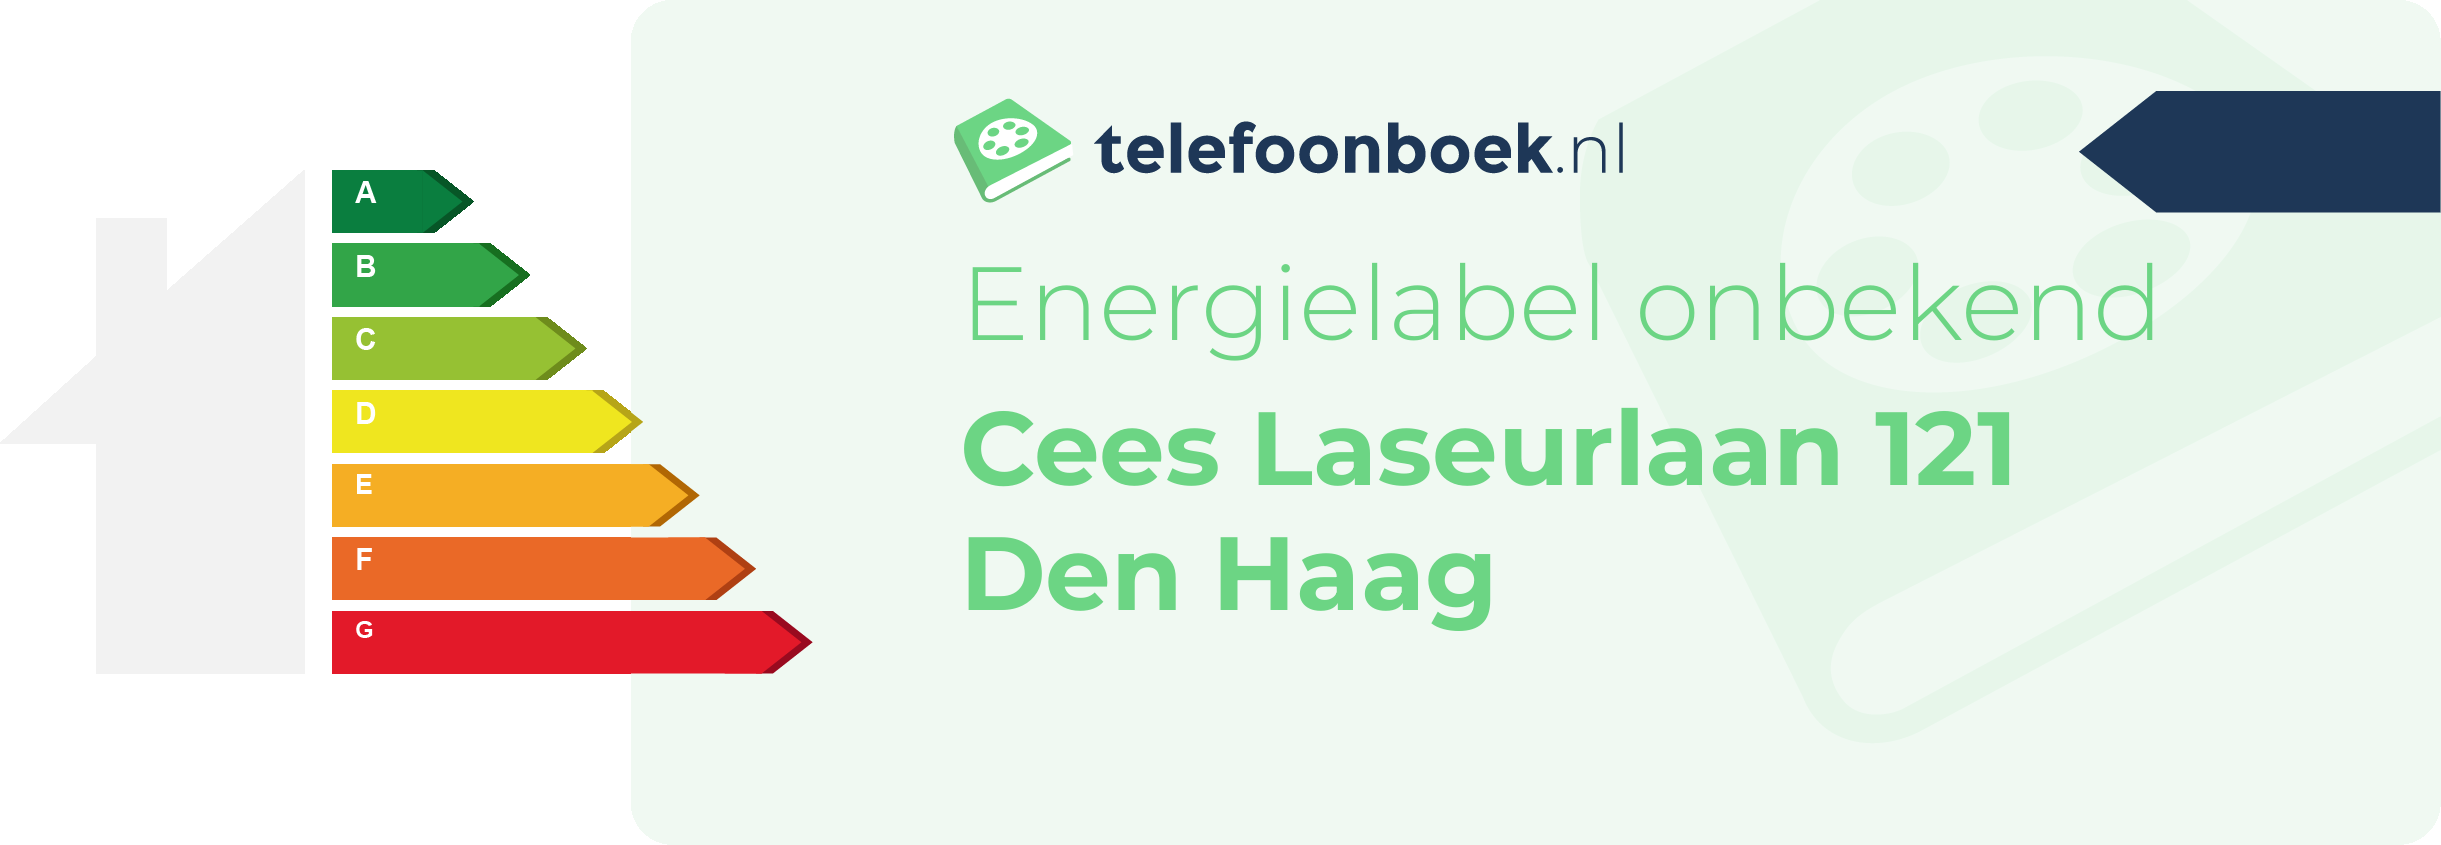 Energielabel Cees Laseurlaan 121 Den Haag